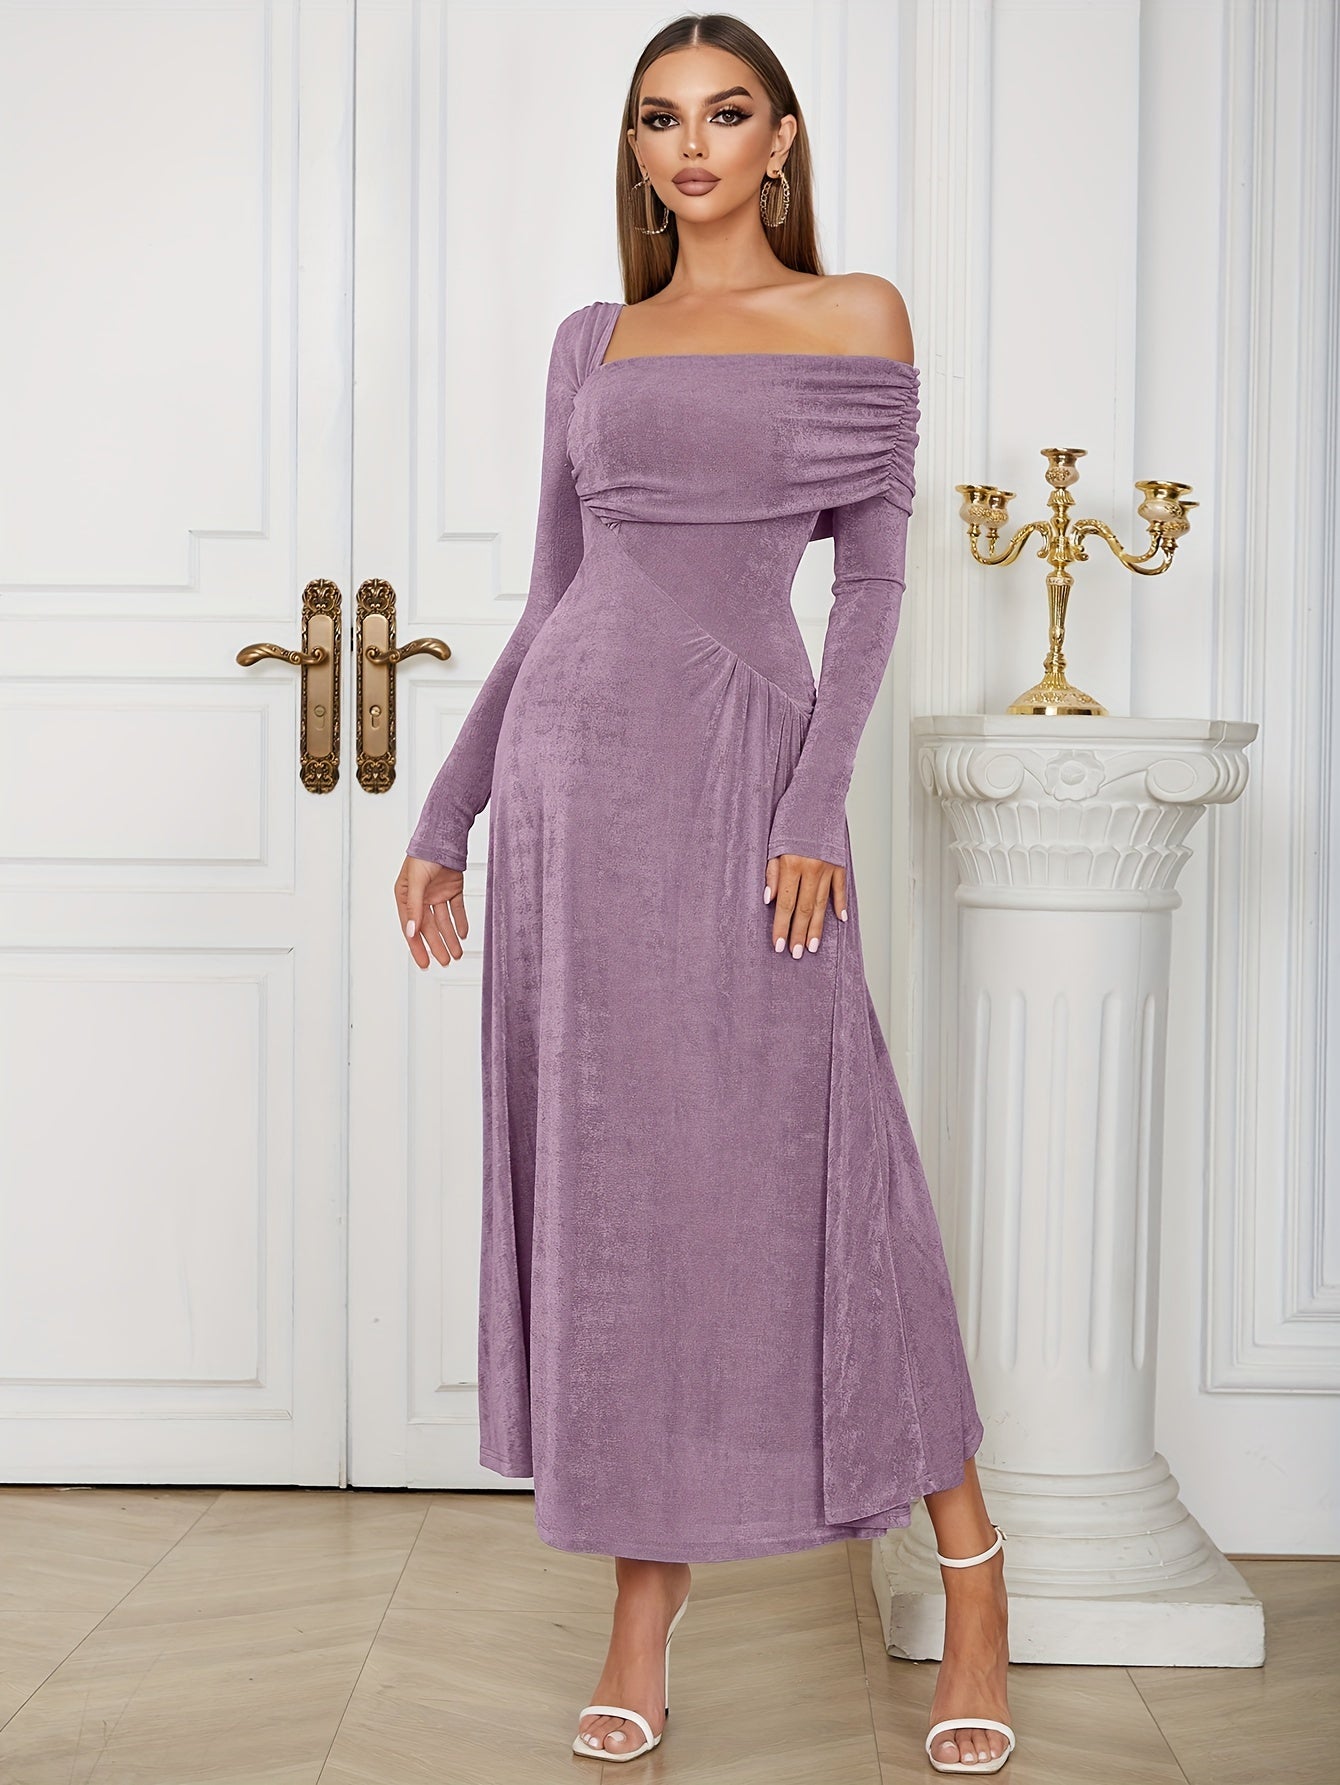 Solides Samtkleid Mit Asymmetrischem Ausschnitt Und Geraffter Taille, Elegantes Kleid